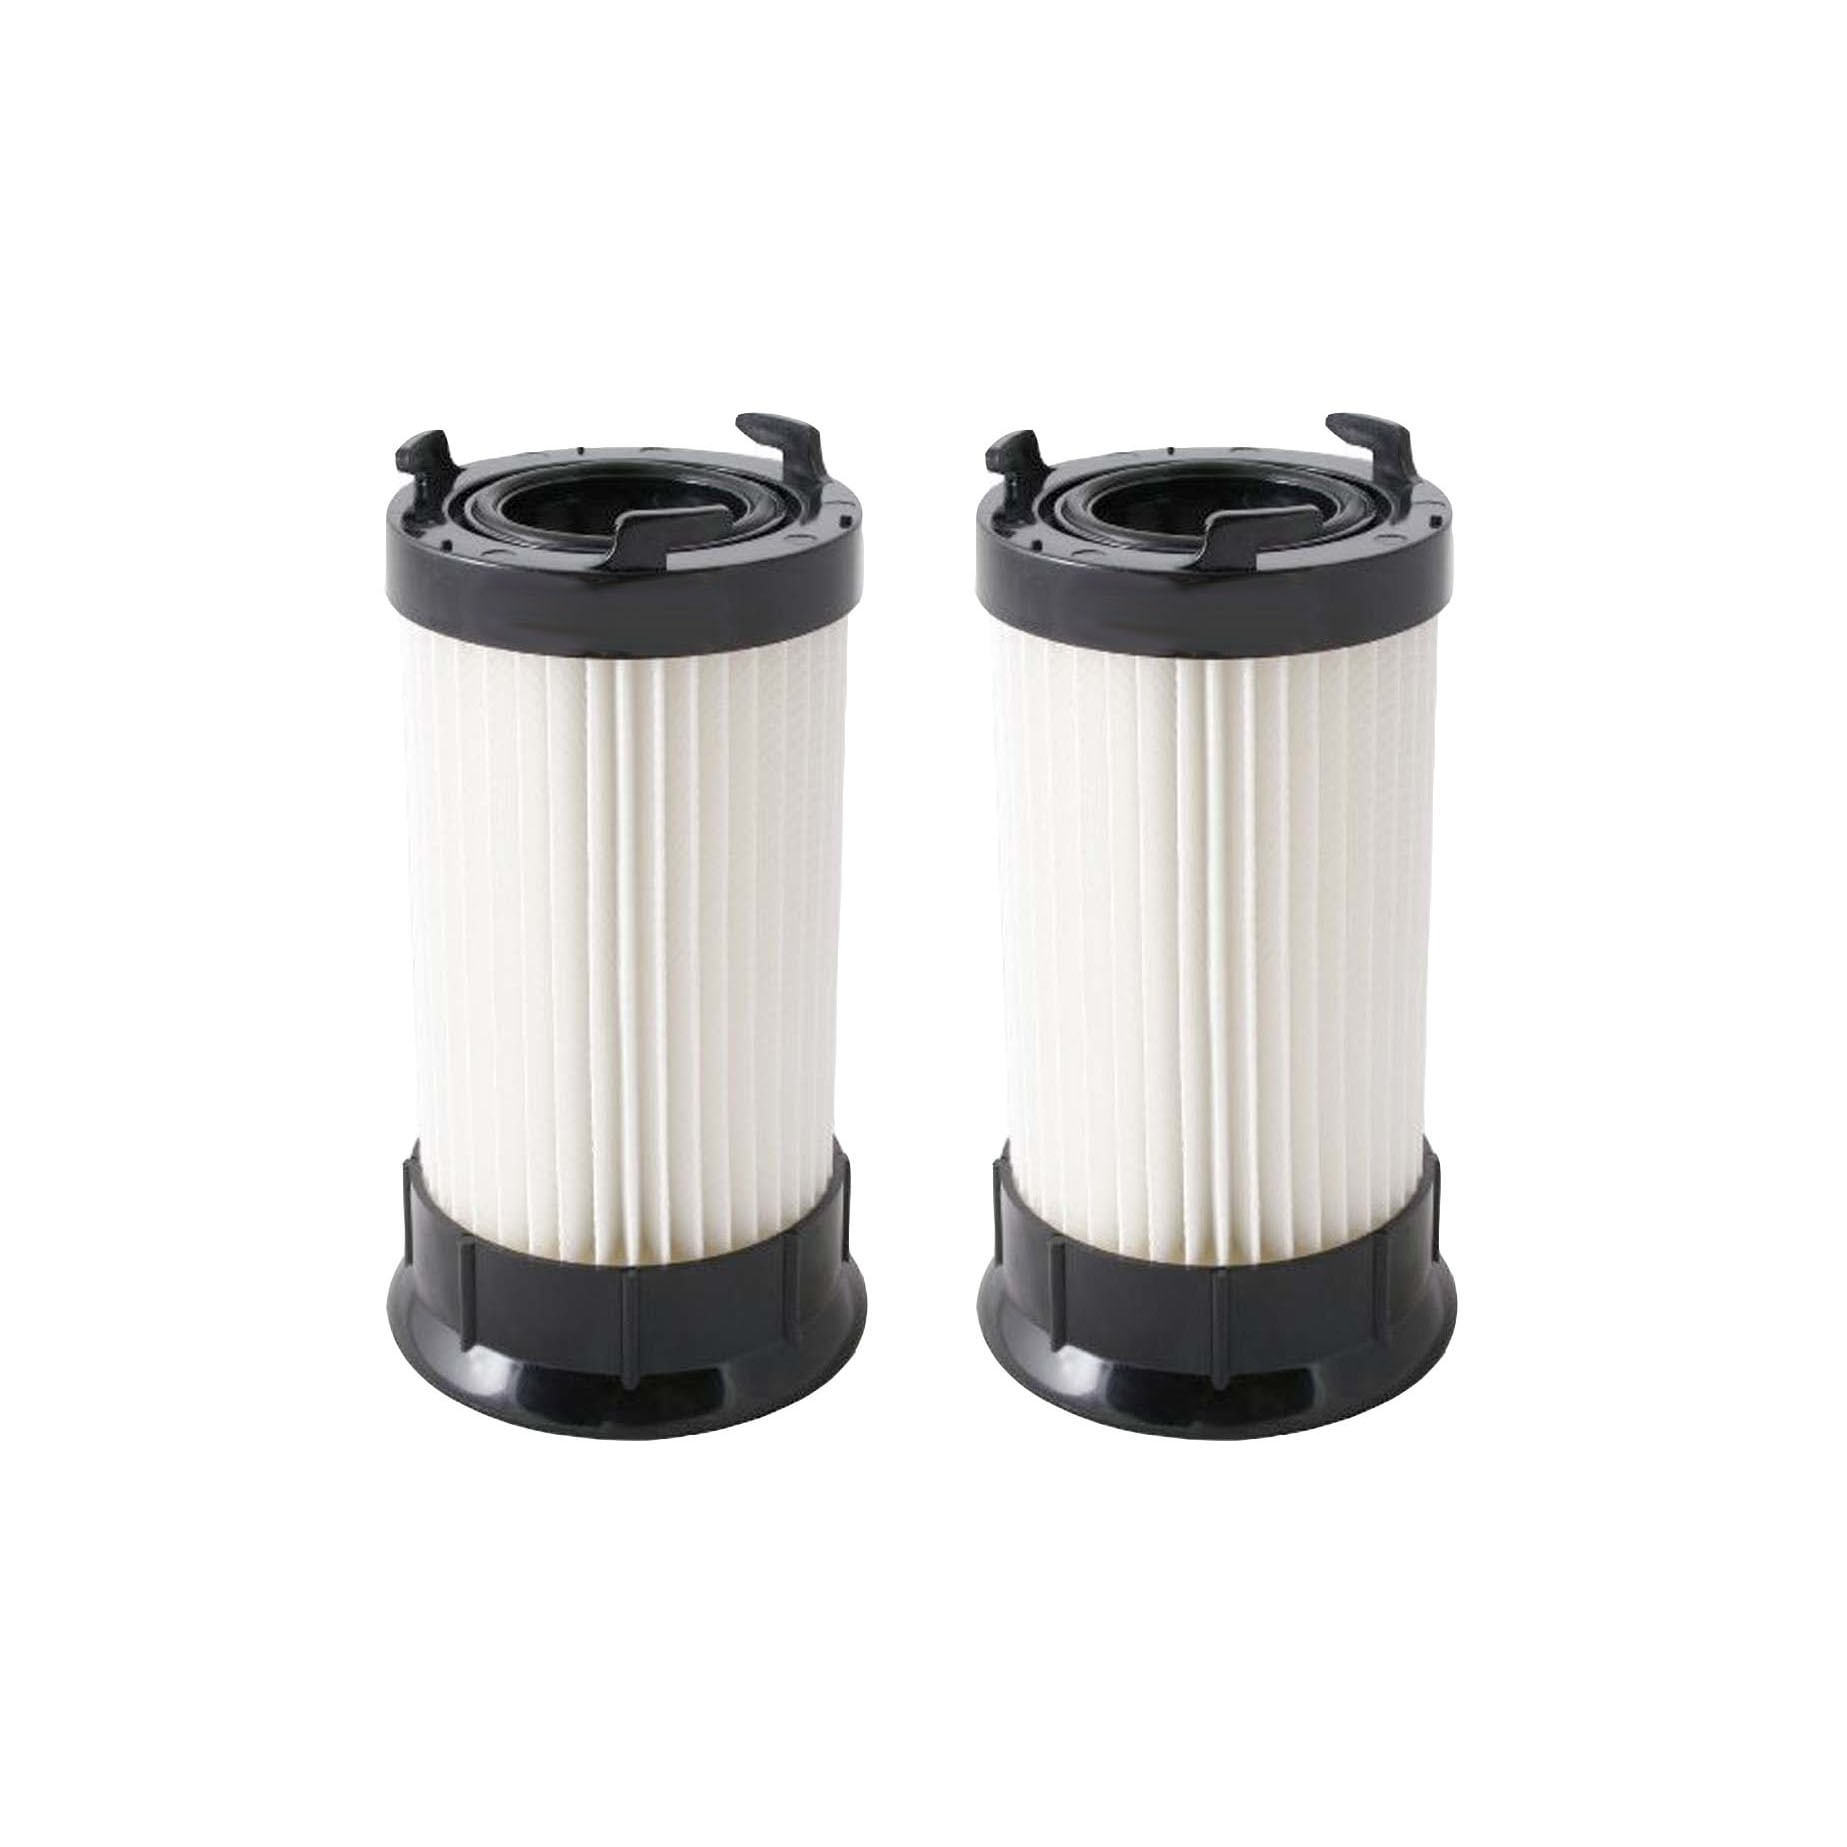 Repl. Black & Decker Dustbuster VF20 Filter, Cover Kit, 499739-00